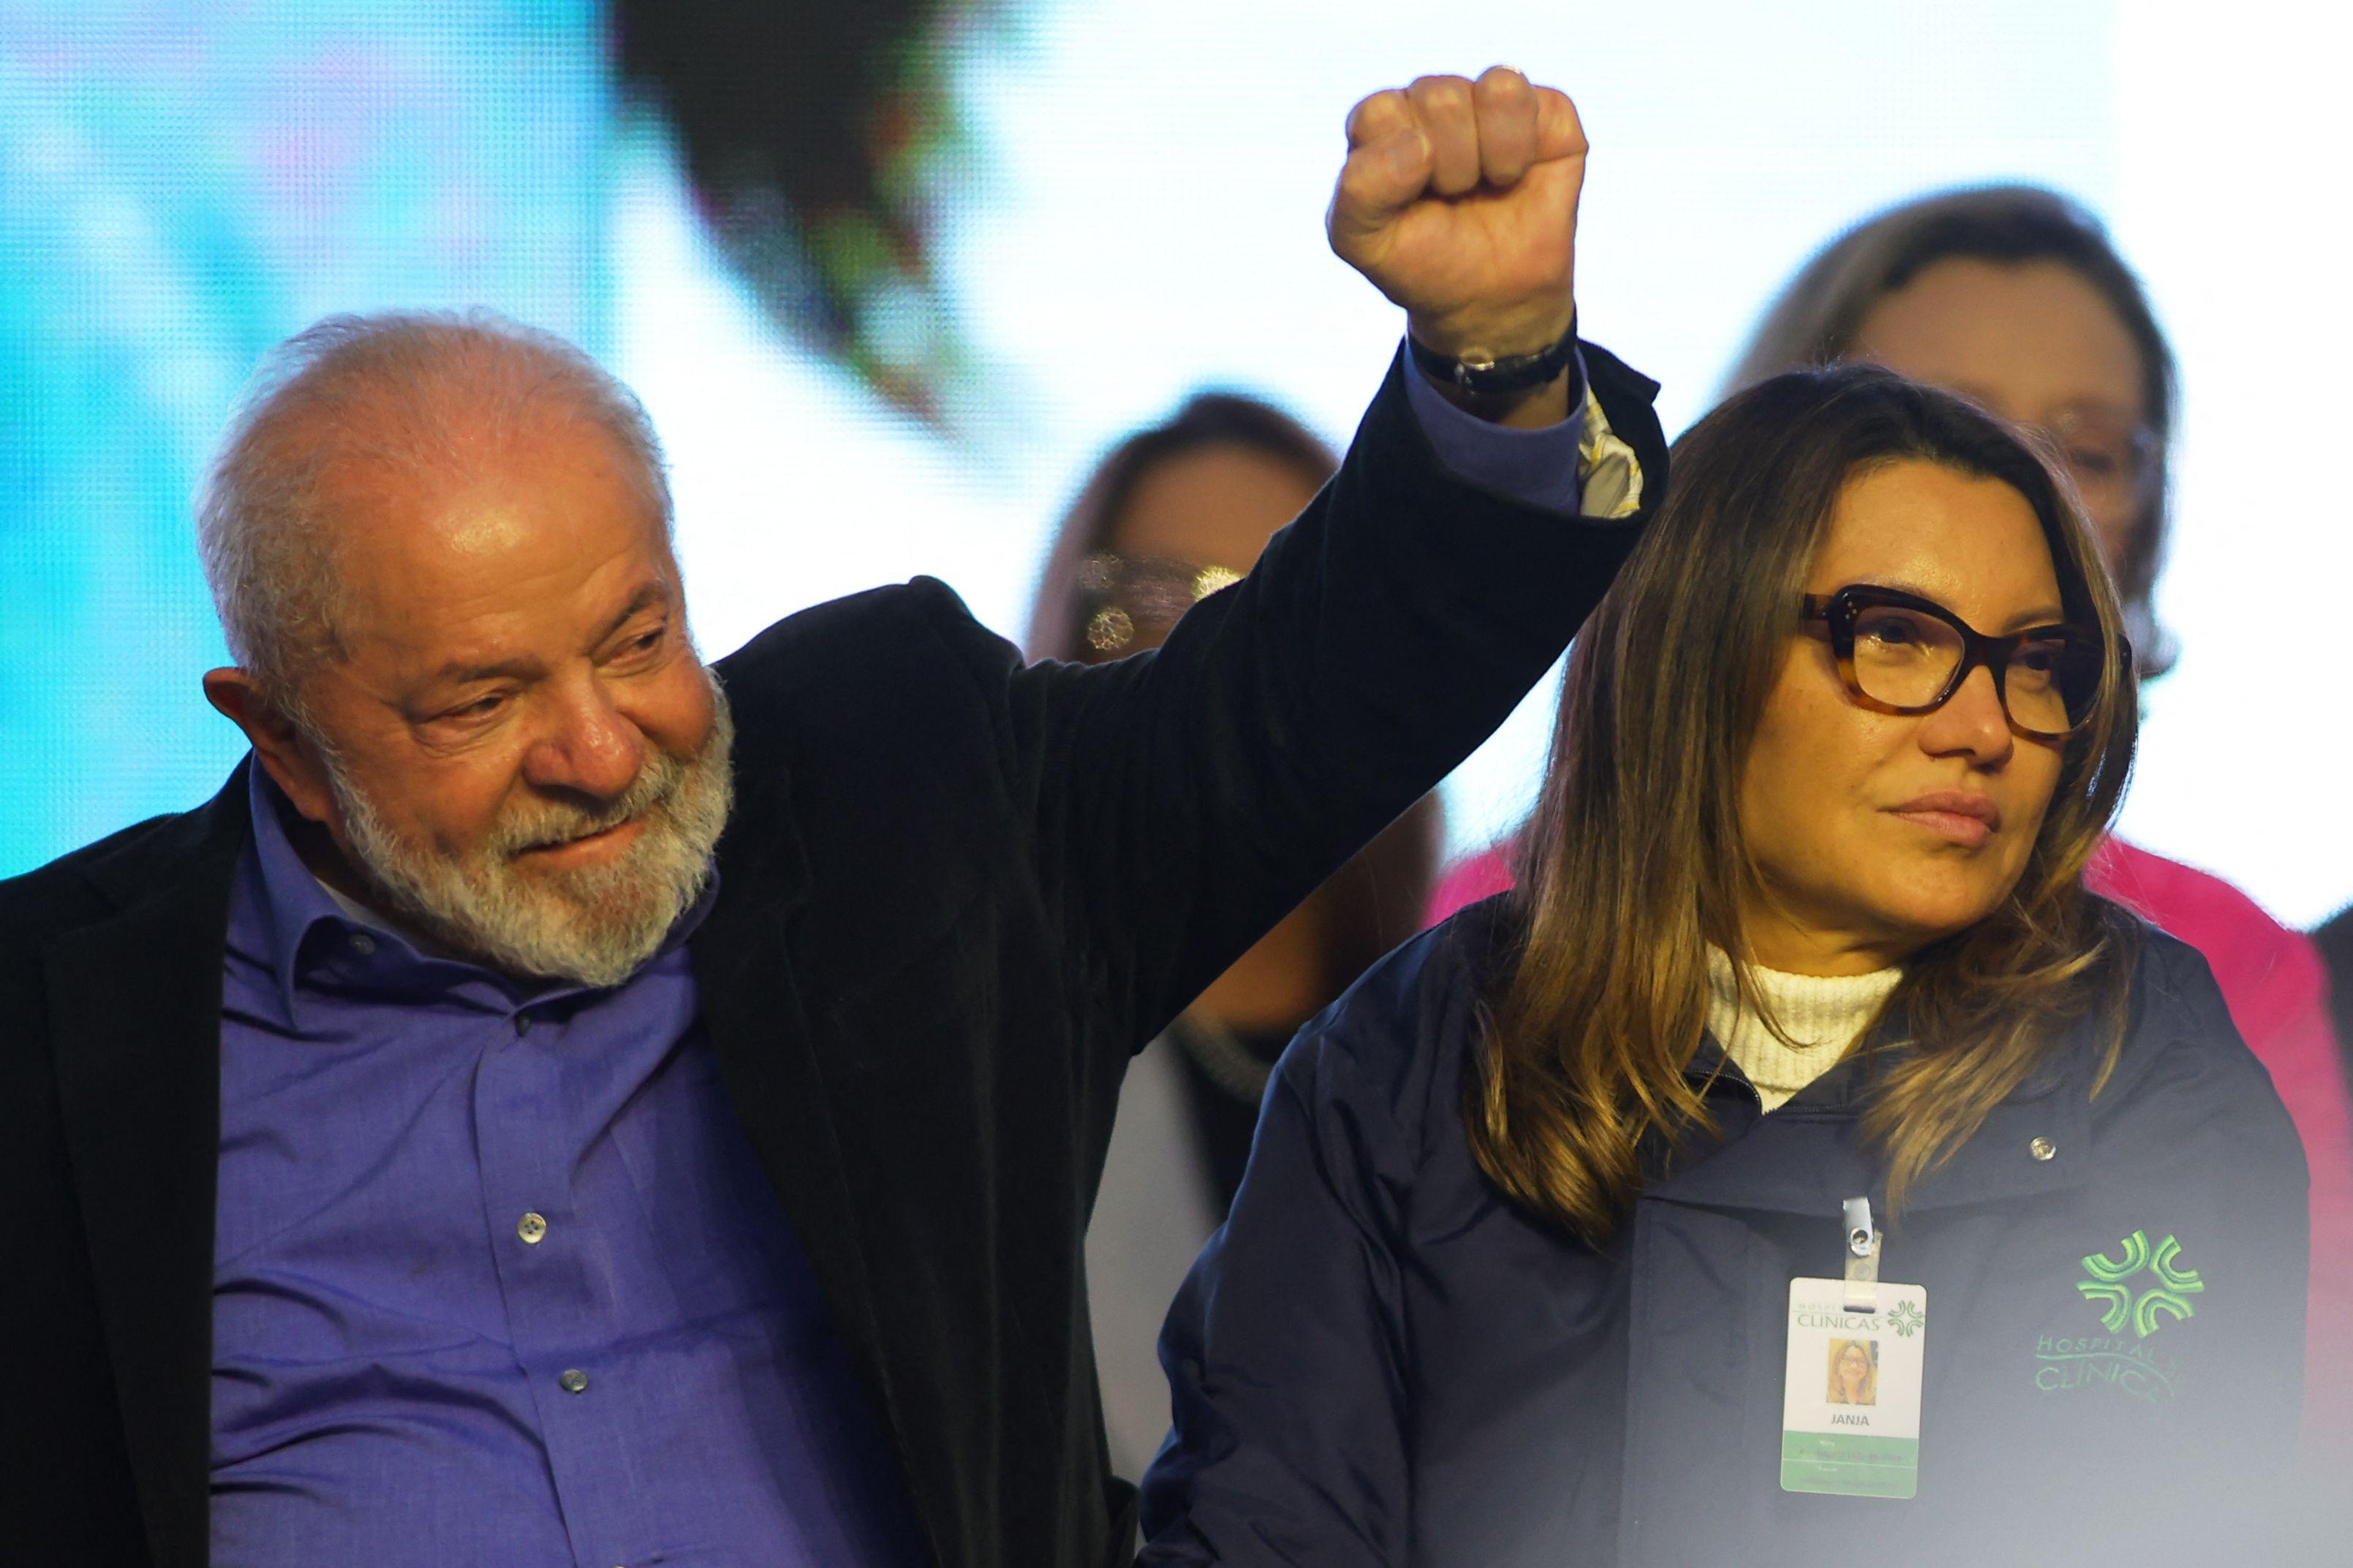 Mestre de Cerimônias interrompe #Lula e encerra evento antes da